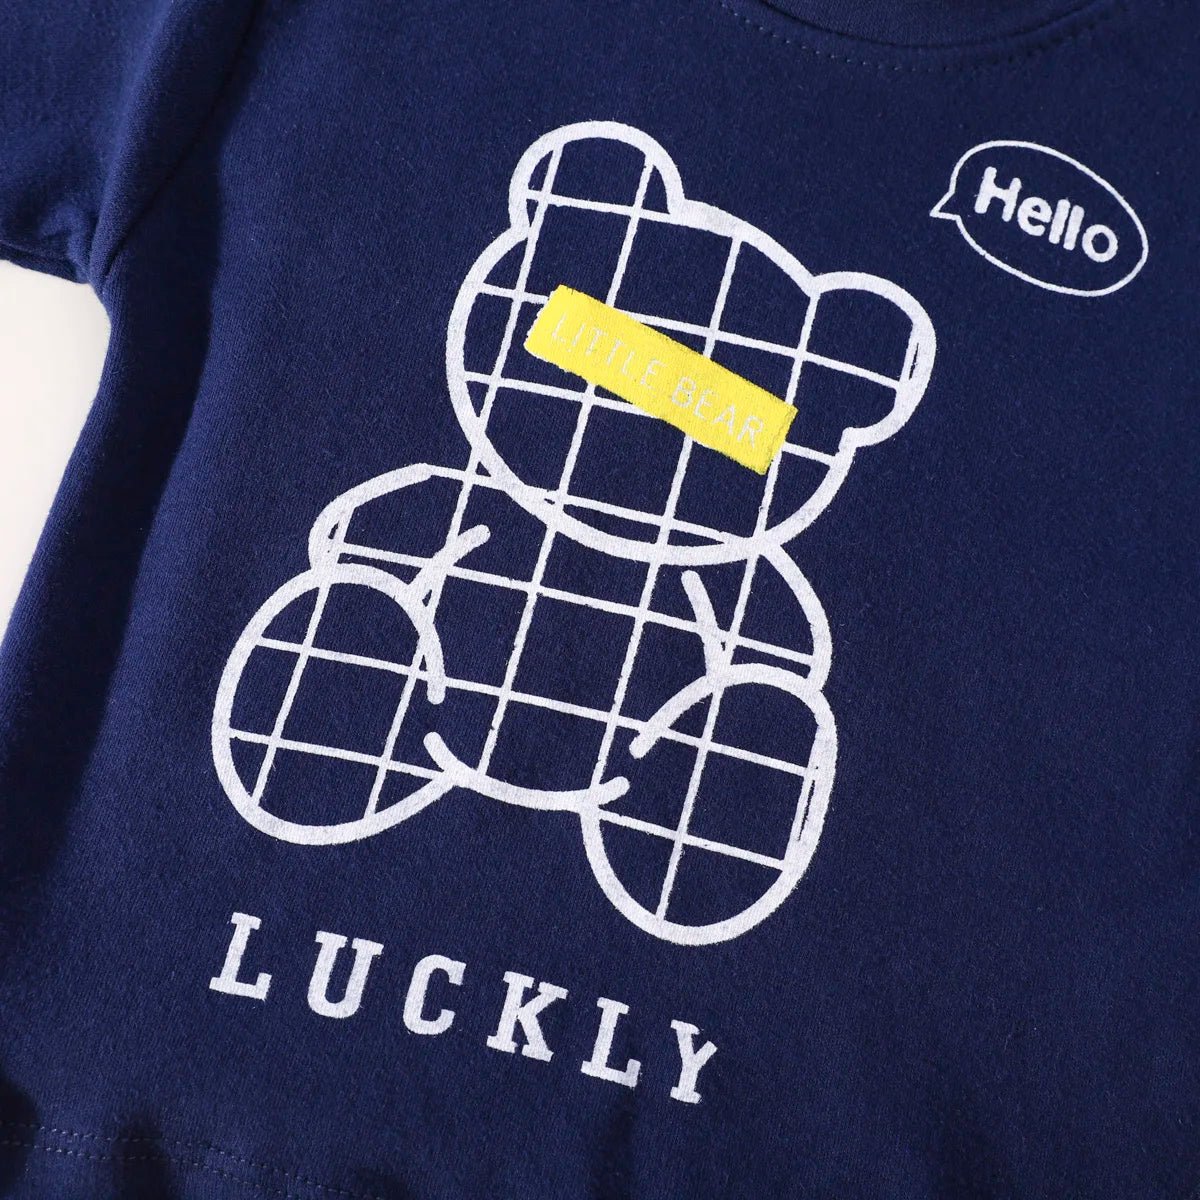 Pijama Infantil Navy Bear (2pcs) Outono Inverno Azul Marinho - Mãe Compra De Mãe